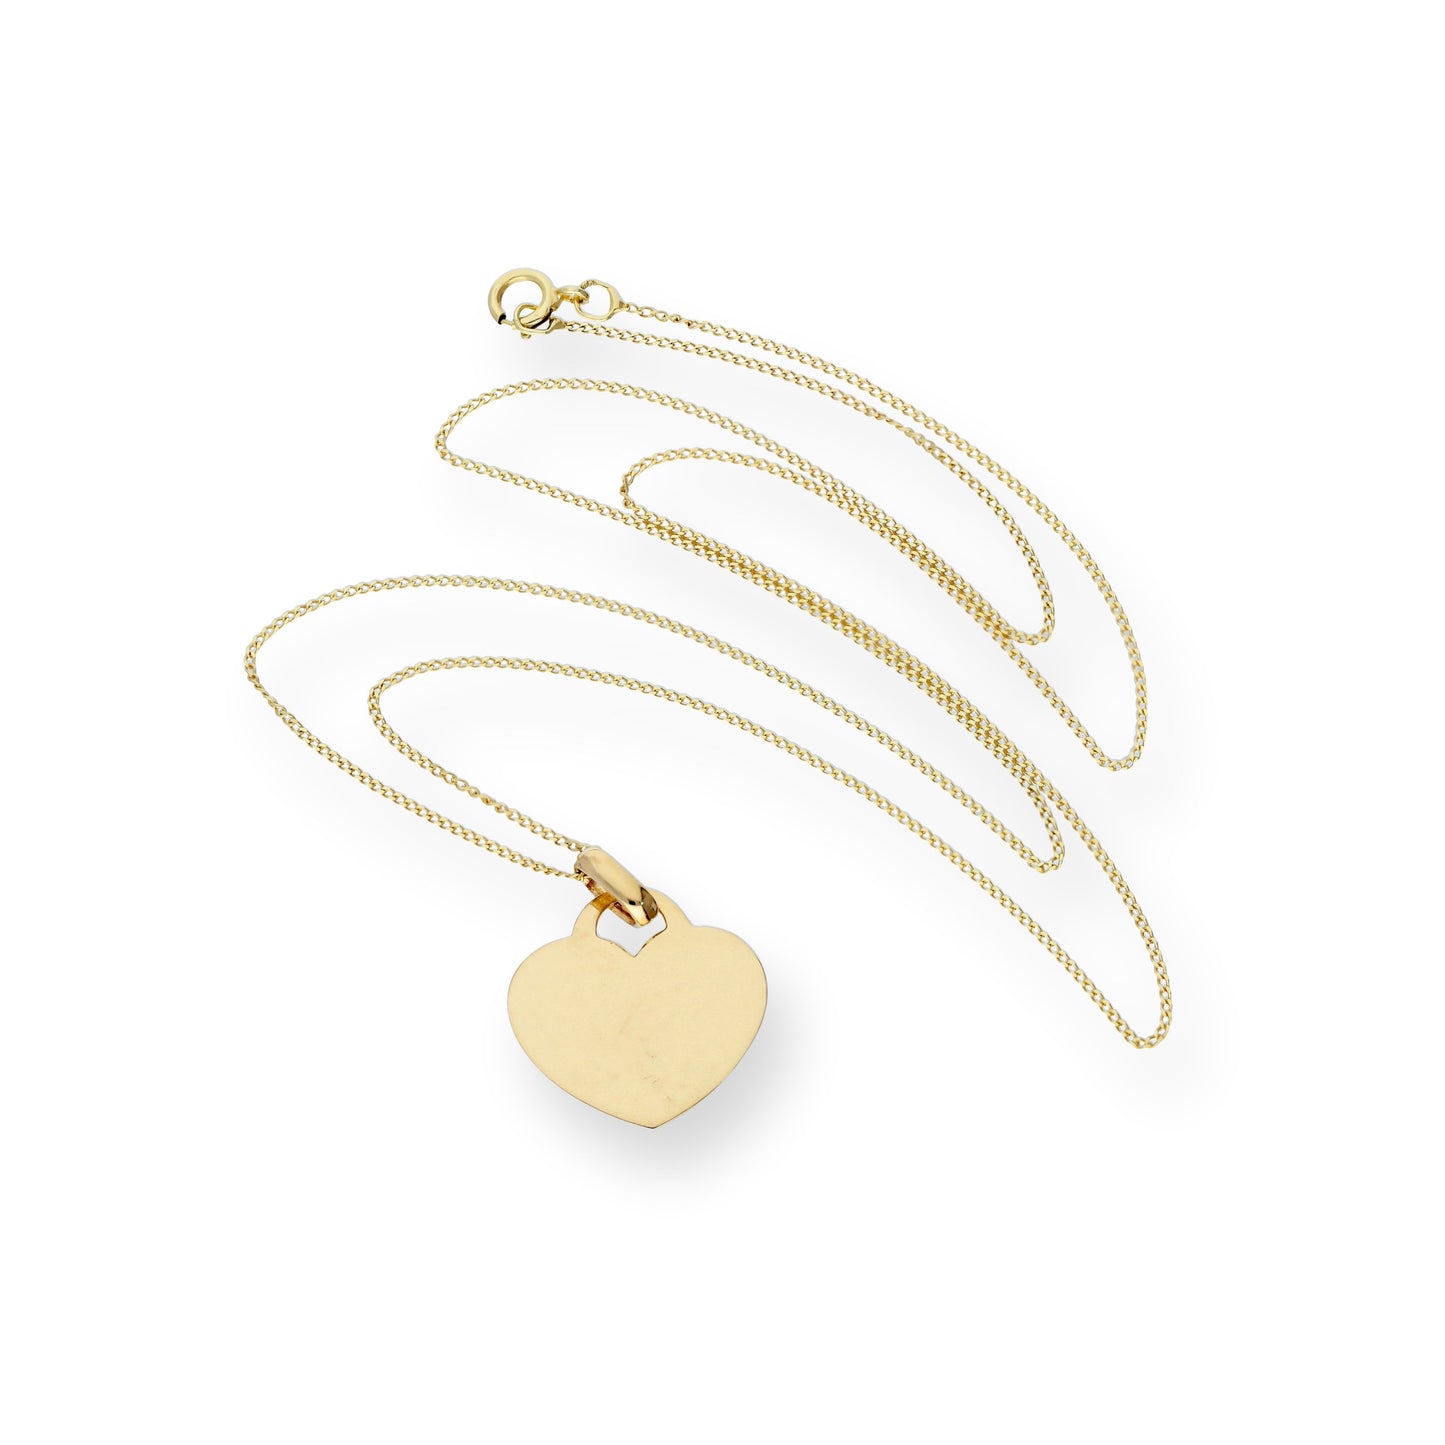 9 Karat Gold Gravierbar Herz Anhänger Halskette 40,5 - 45,5cm